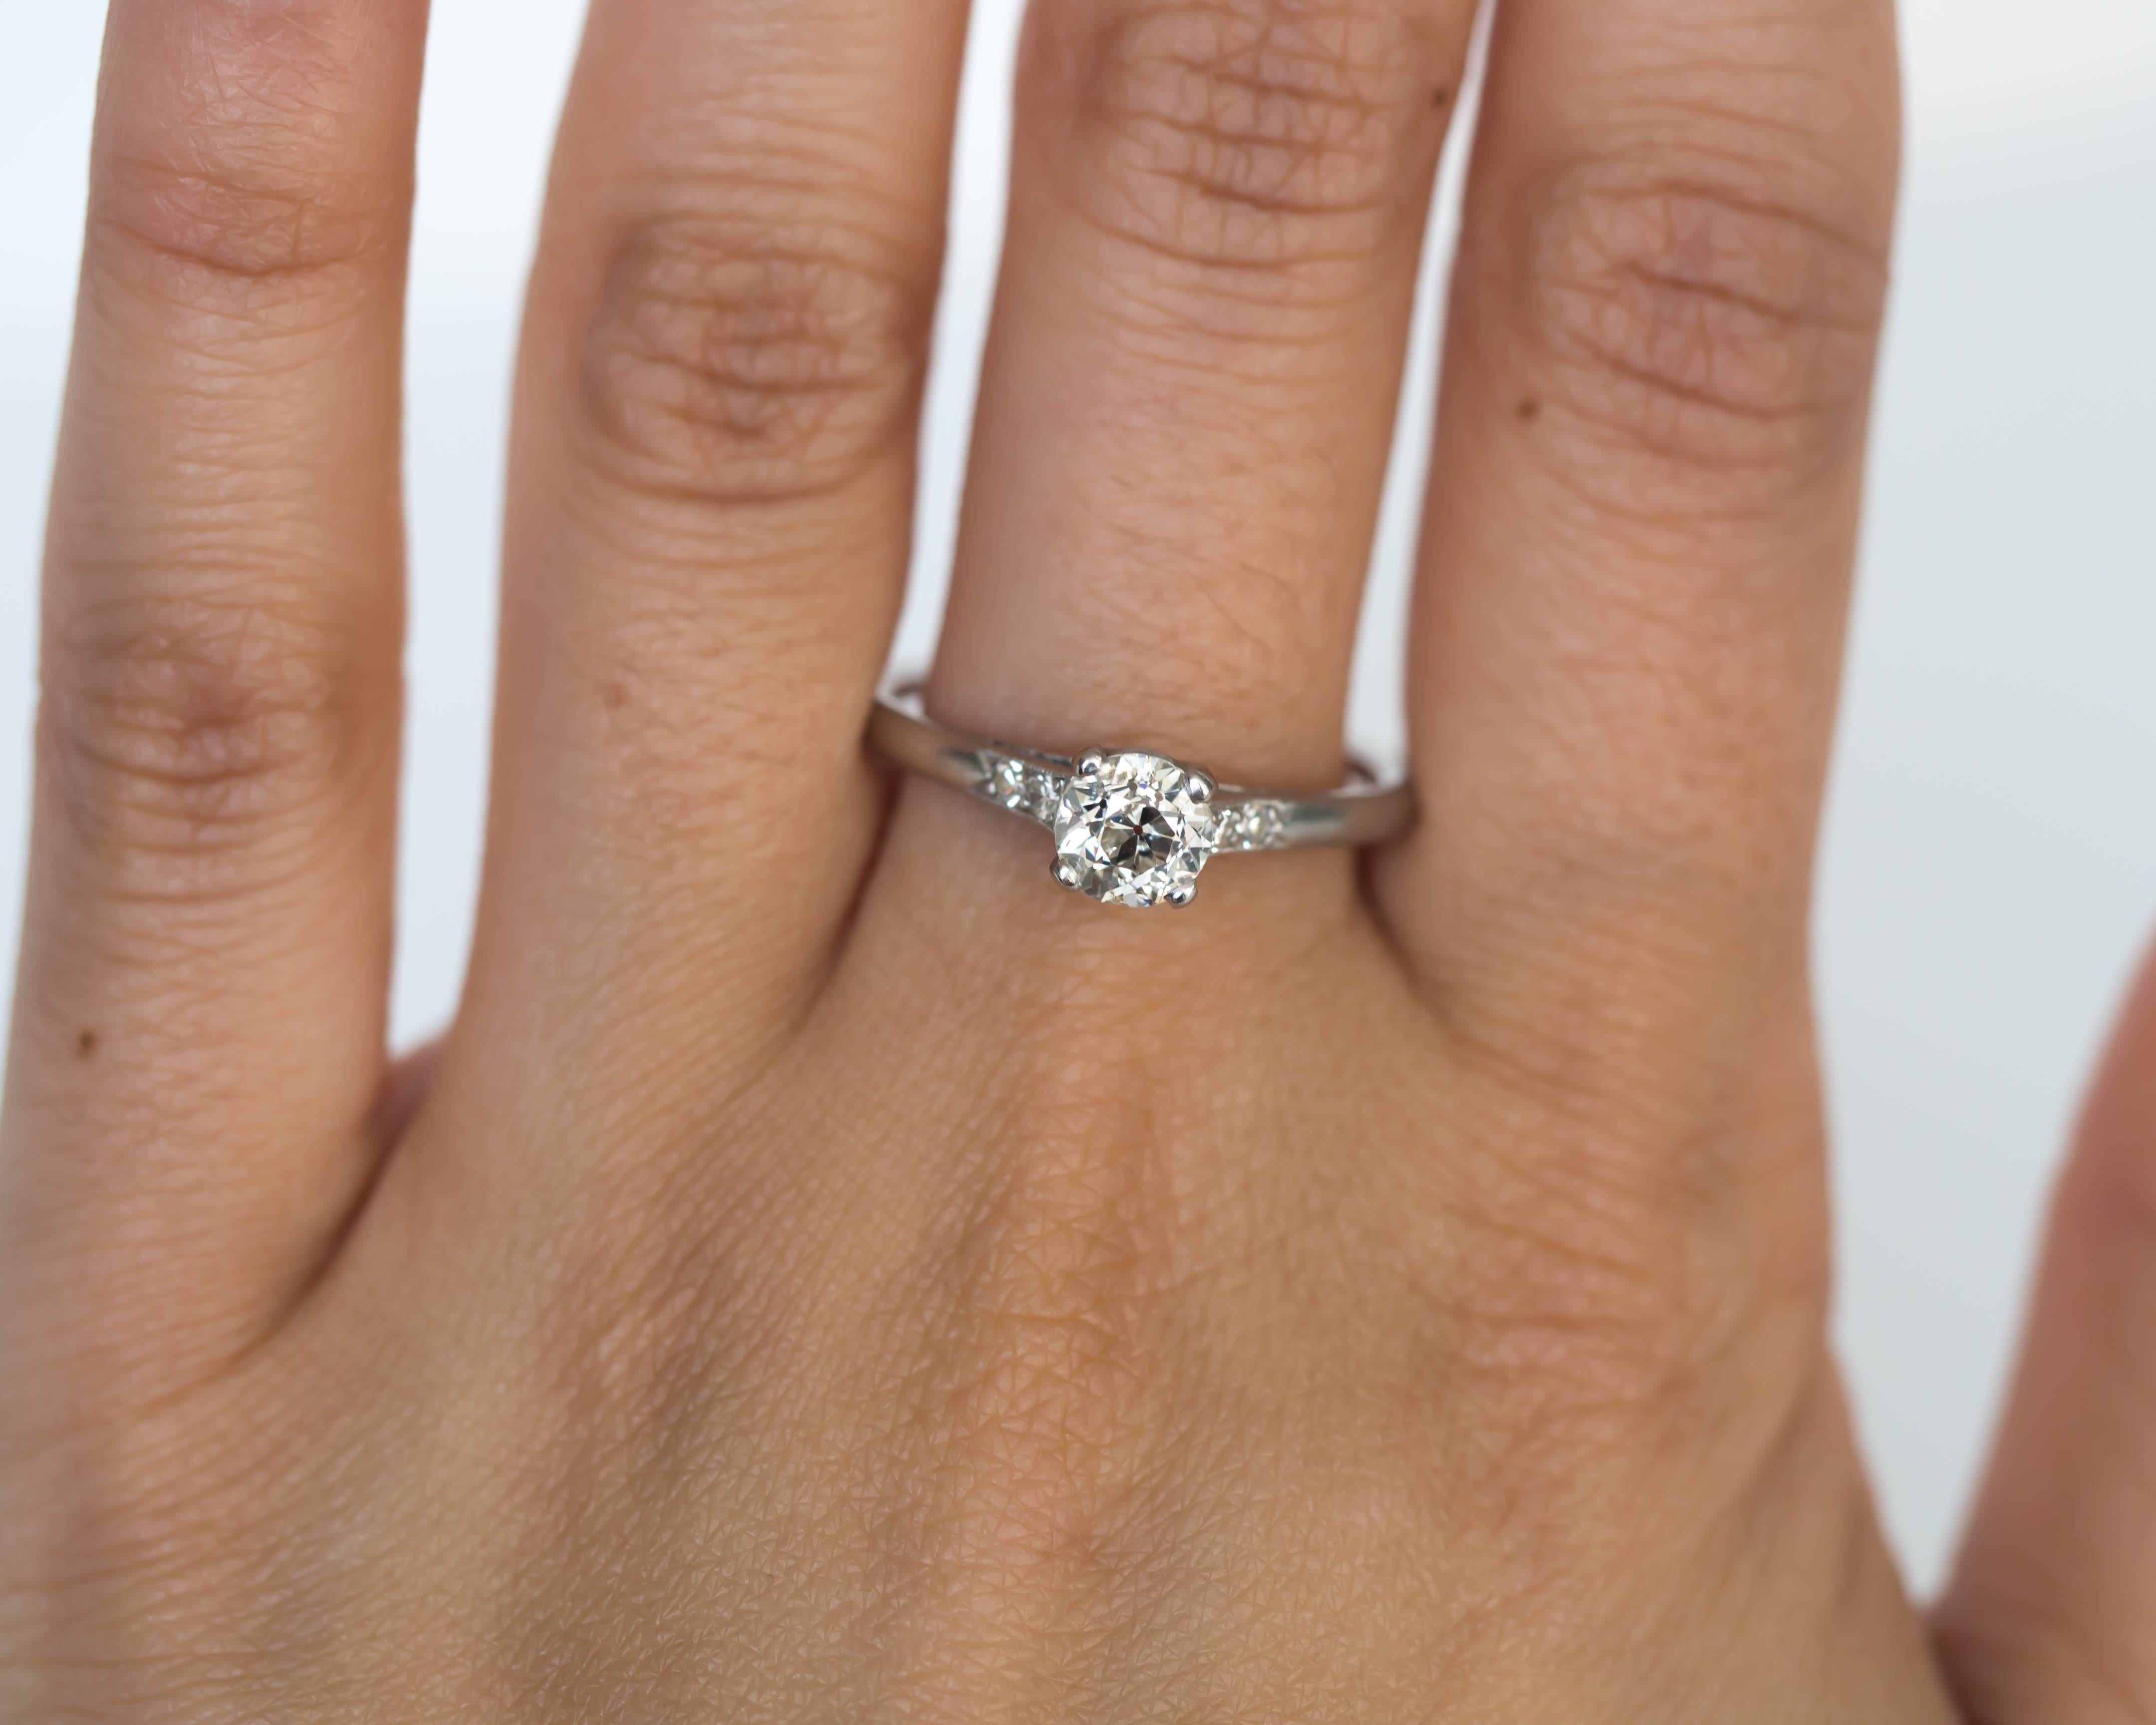 Women's 1905 Edwardian Platinum GIA Certified .66 Carat Diamond Engagement Ring